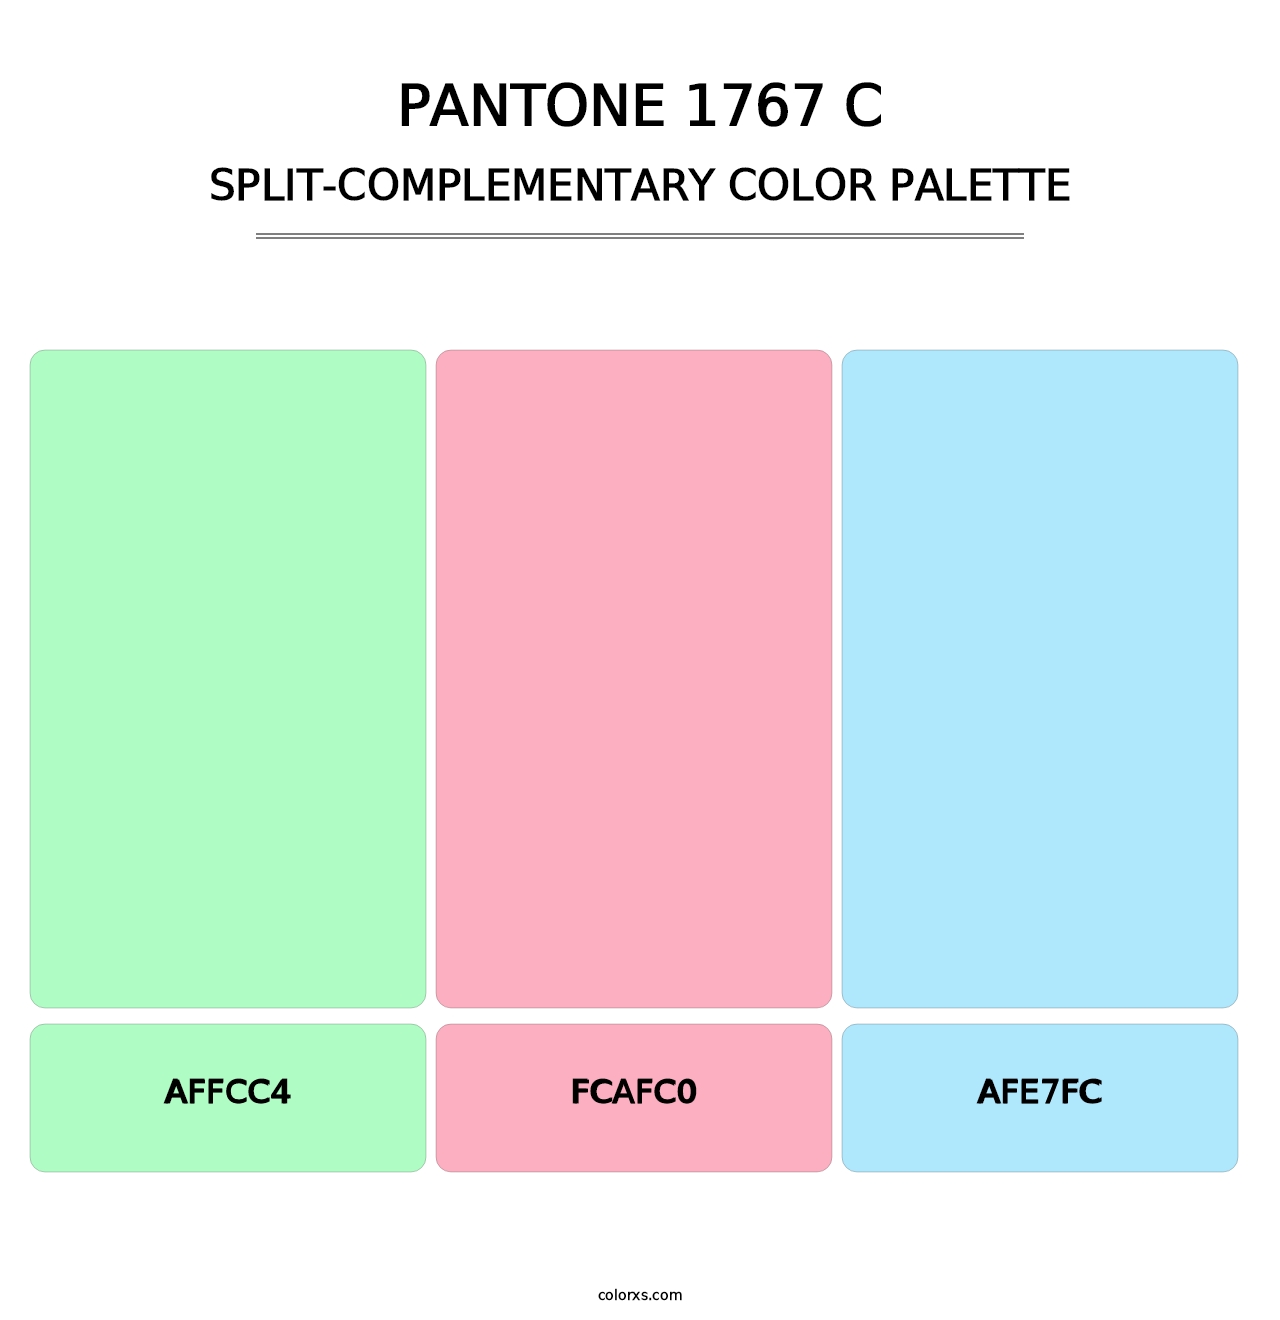 PANTONE 1767 C - Split-Complementary Color Palette